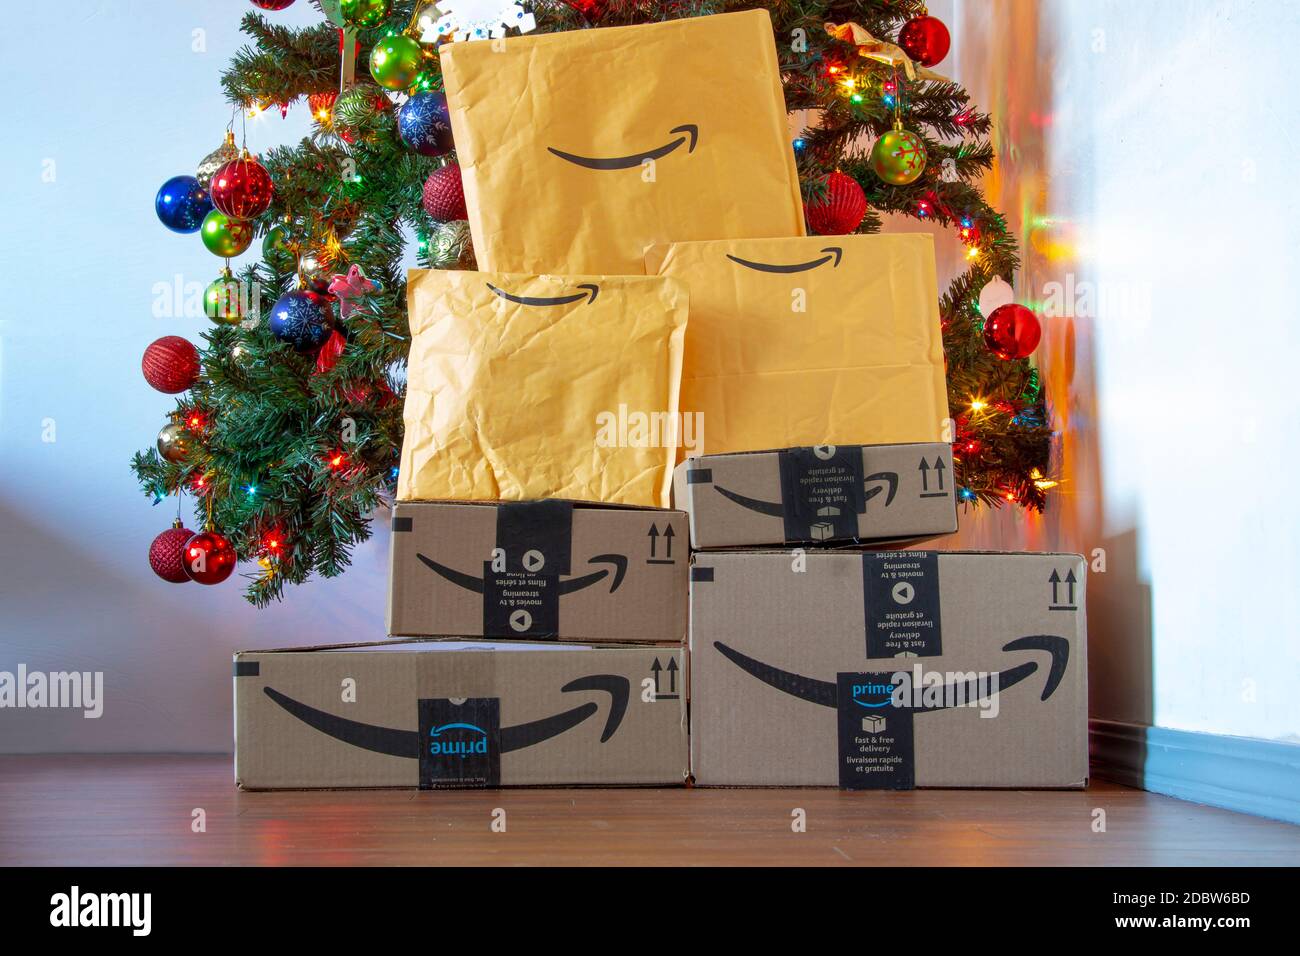 Calgary, Alberta, Canada. 16 novembre 2020. Boîtes et enveloppes Amazon  sous un sapin de Noël avec ornements et lumières allumés. Concept :  livraison de packages Photo Stock - Alamy